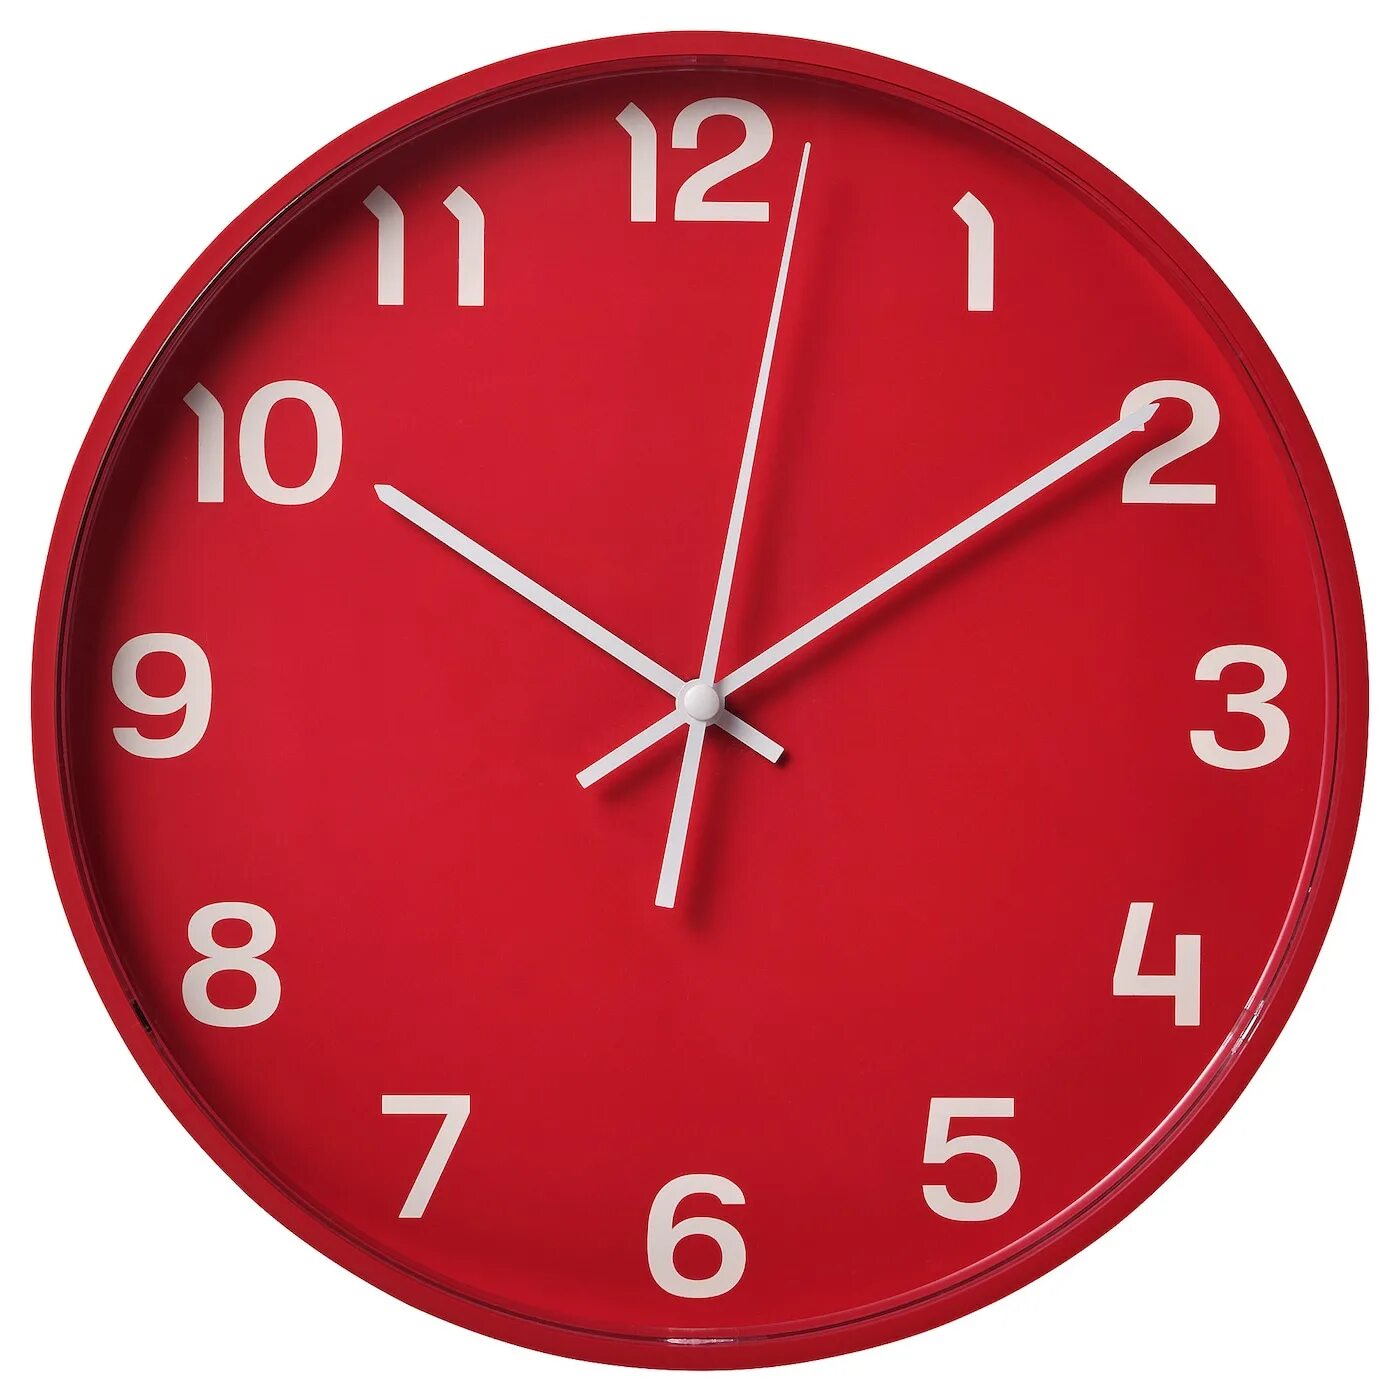 Pluttis настенные часы, низкое напряжение/красный, 28 см. Часы икеа плуттис красный. Часы настенные икеа плуттис. Часы красные ikea.